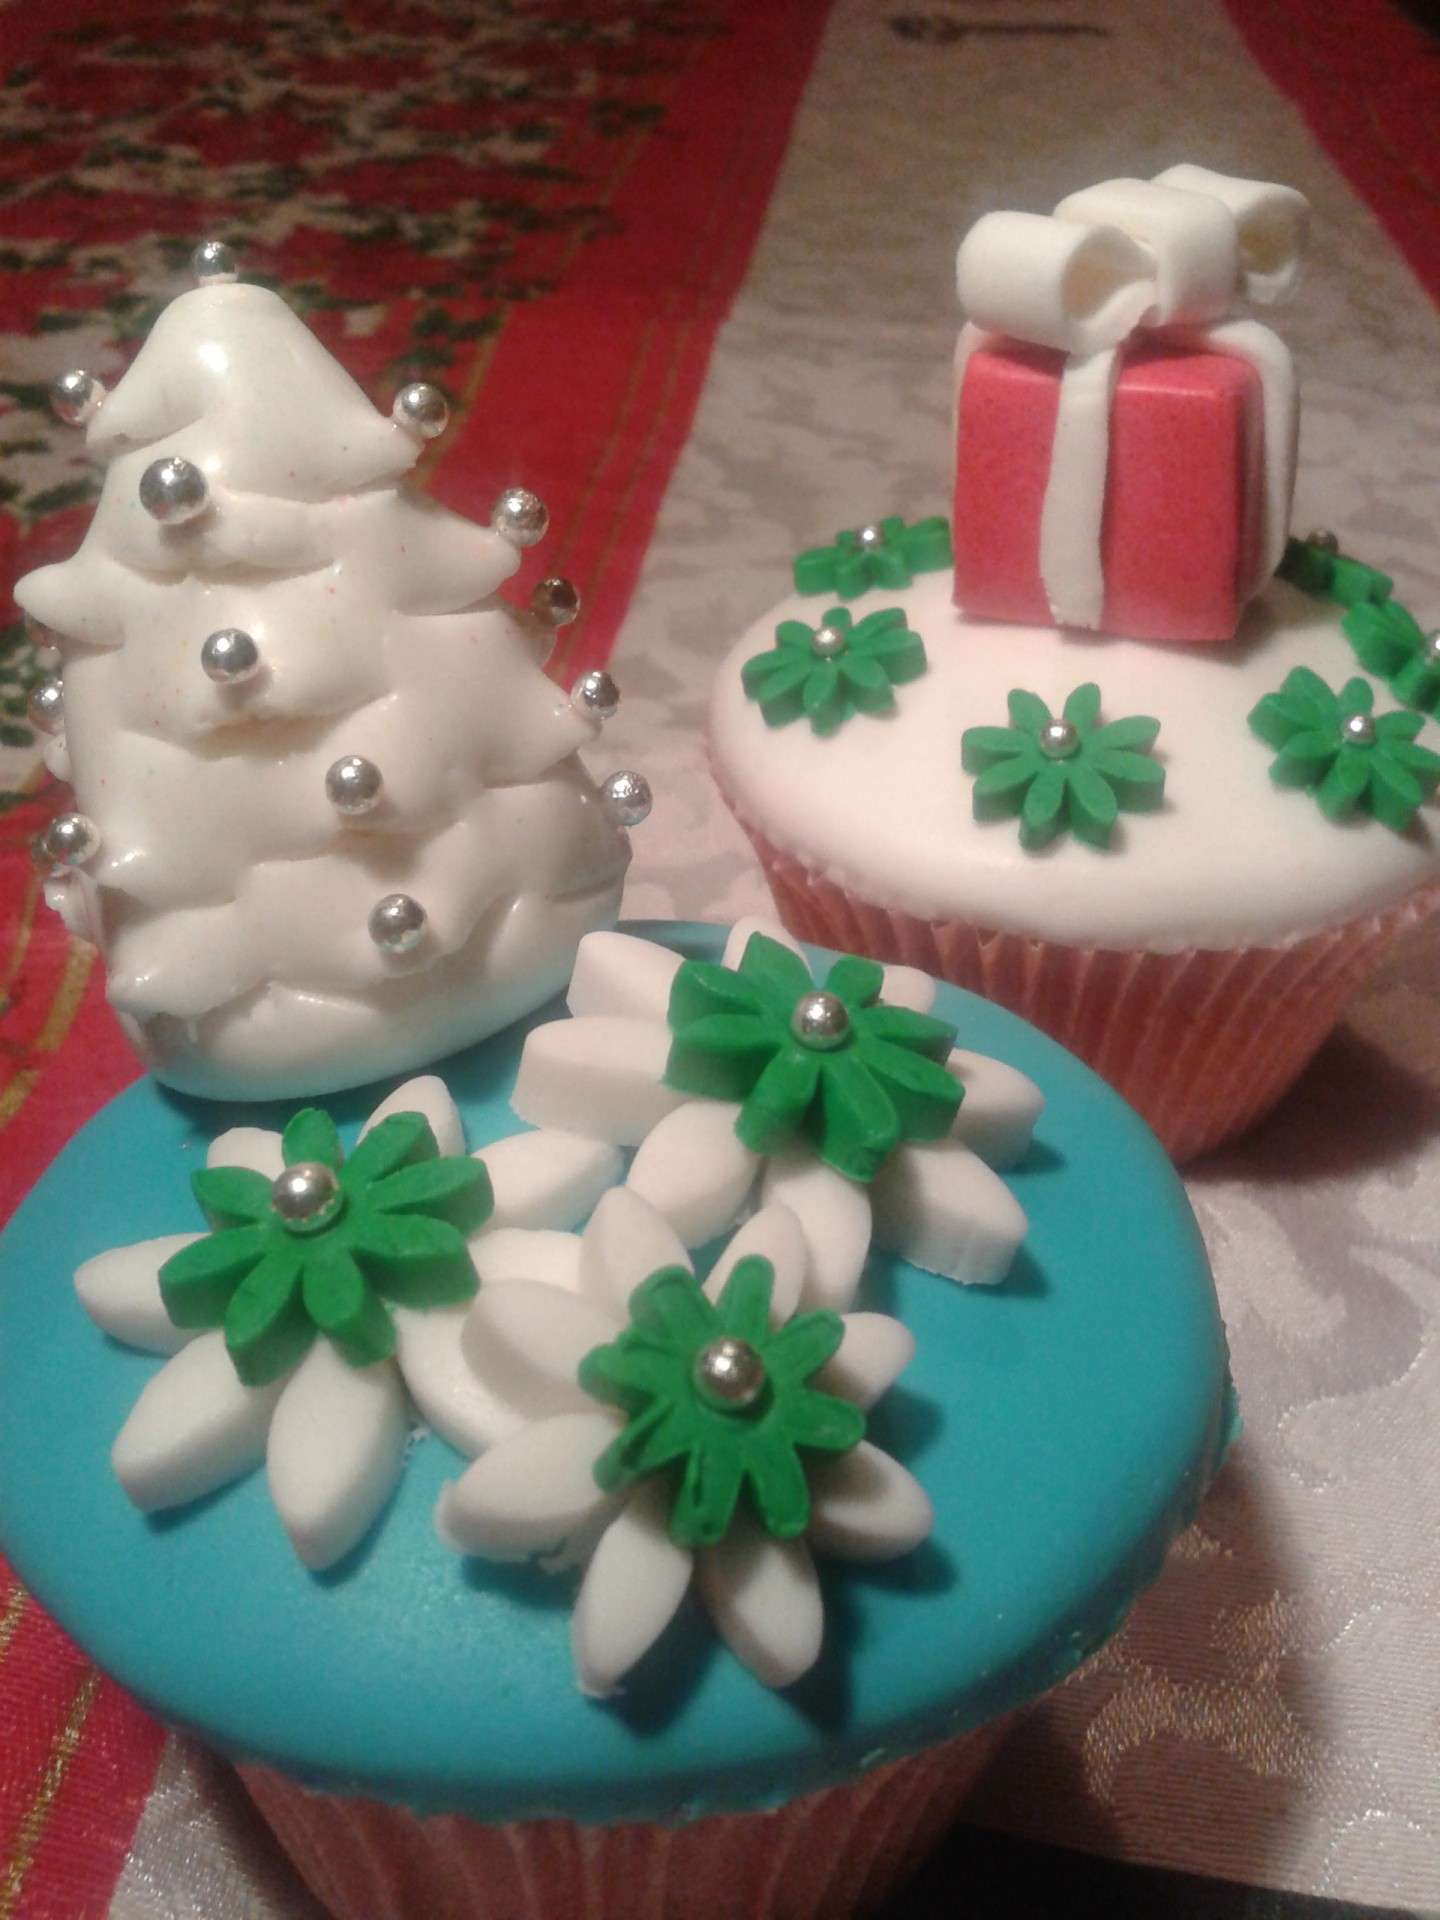 Regalo di Natale sui cupcakes